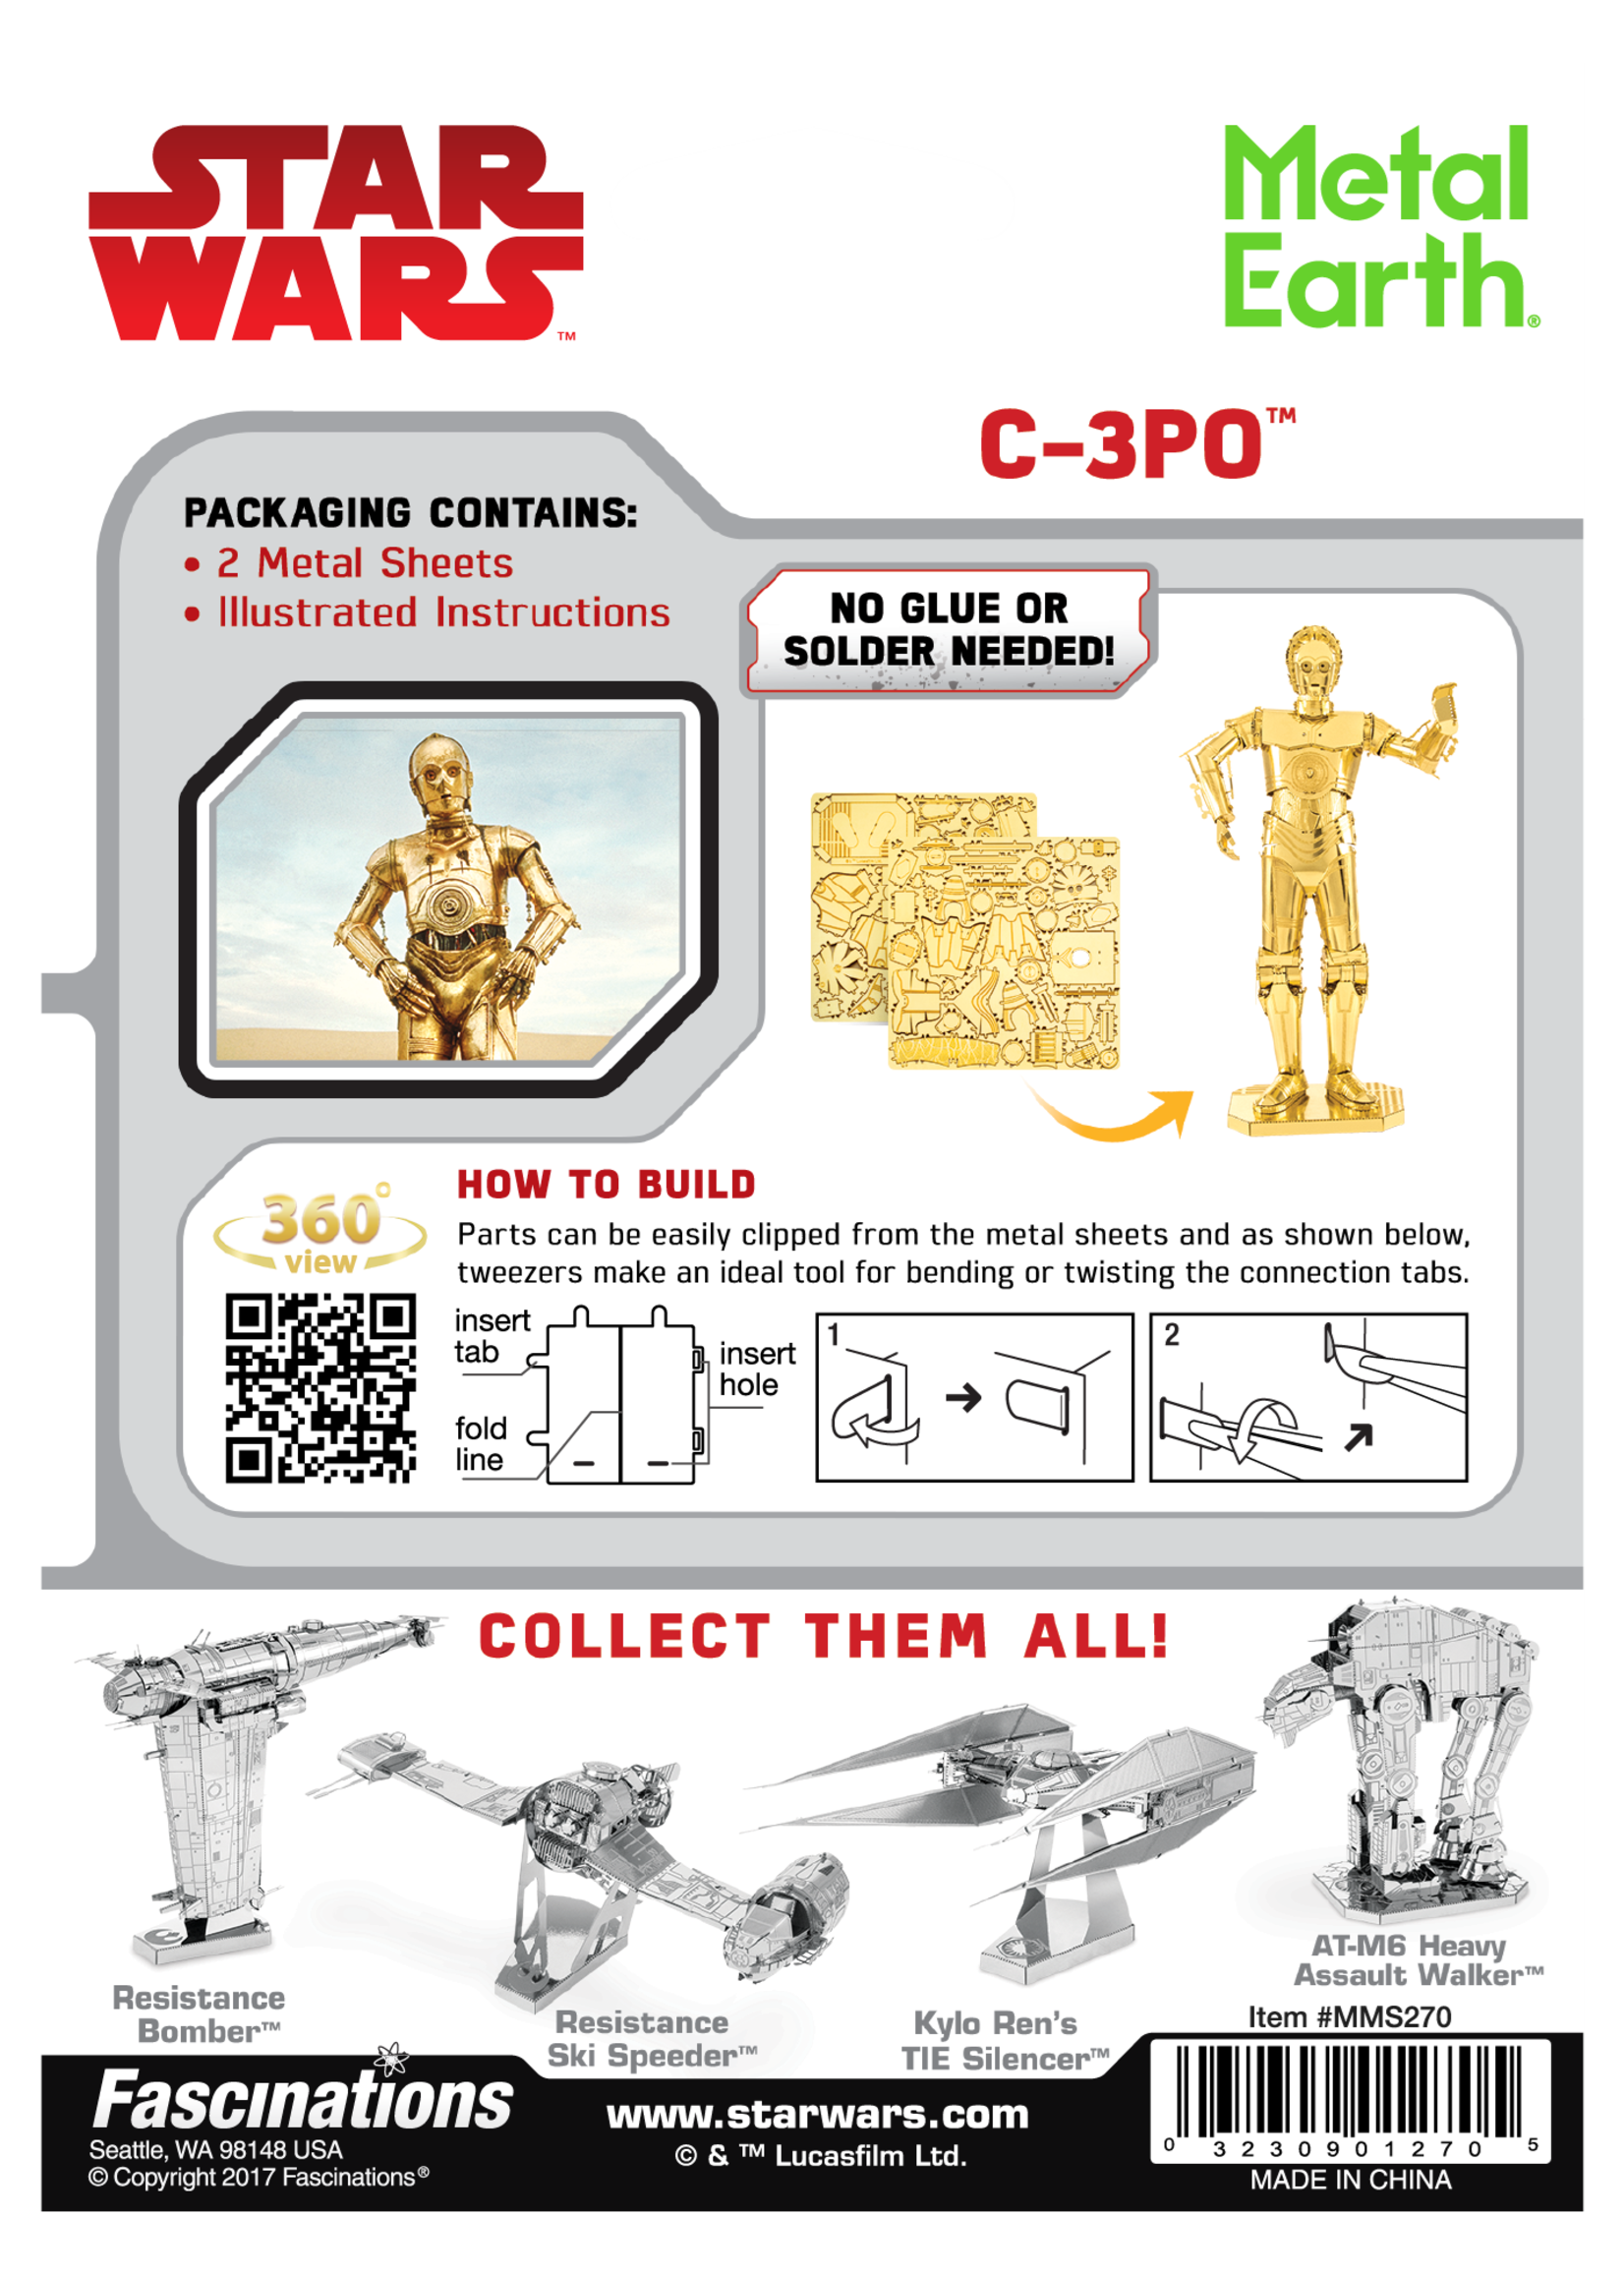 C-3P0 - GOLD Star Wars